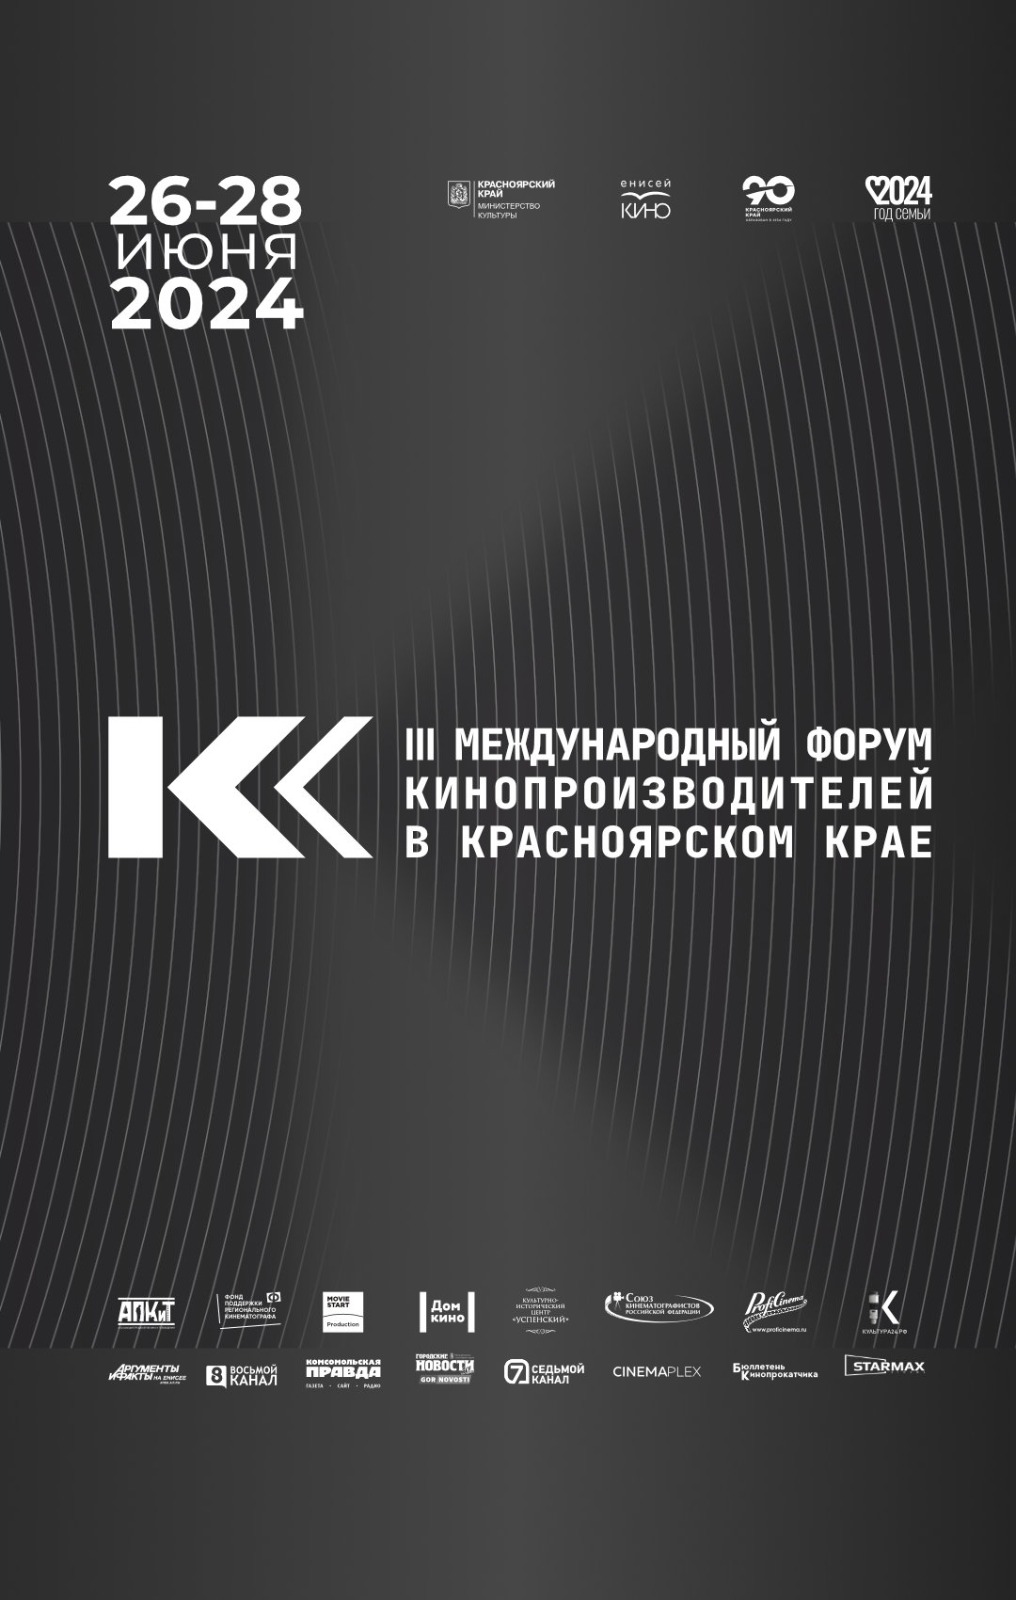 Культурная программа III Международного форума кинопроизводителей в Красноярском крае